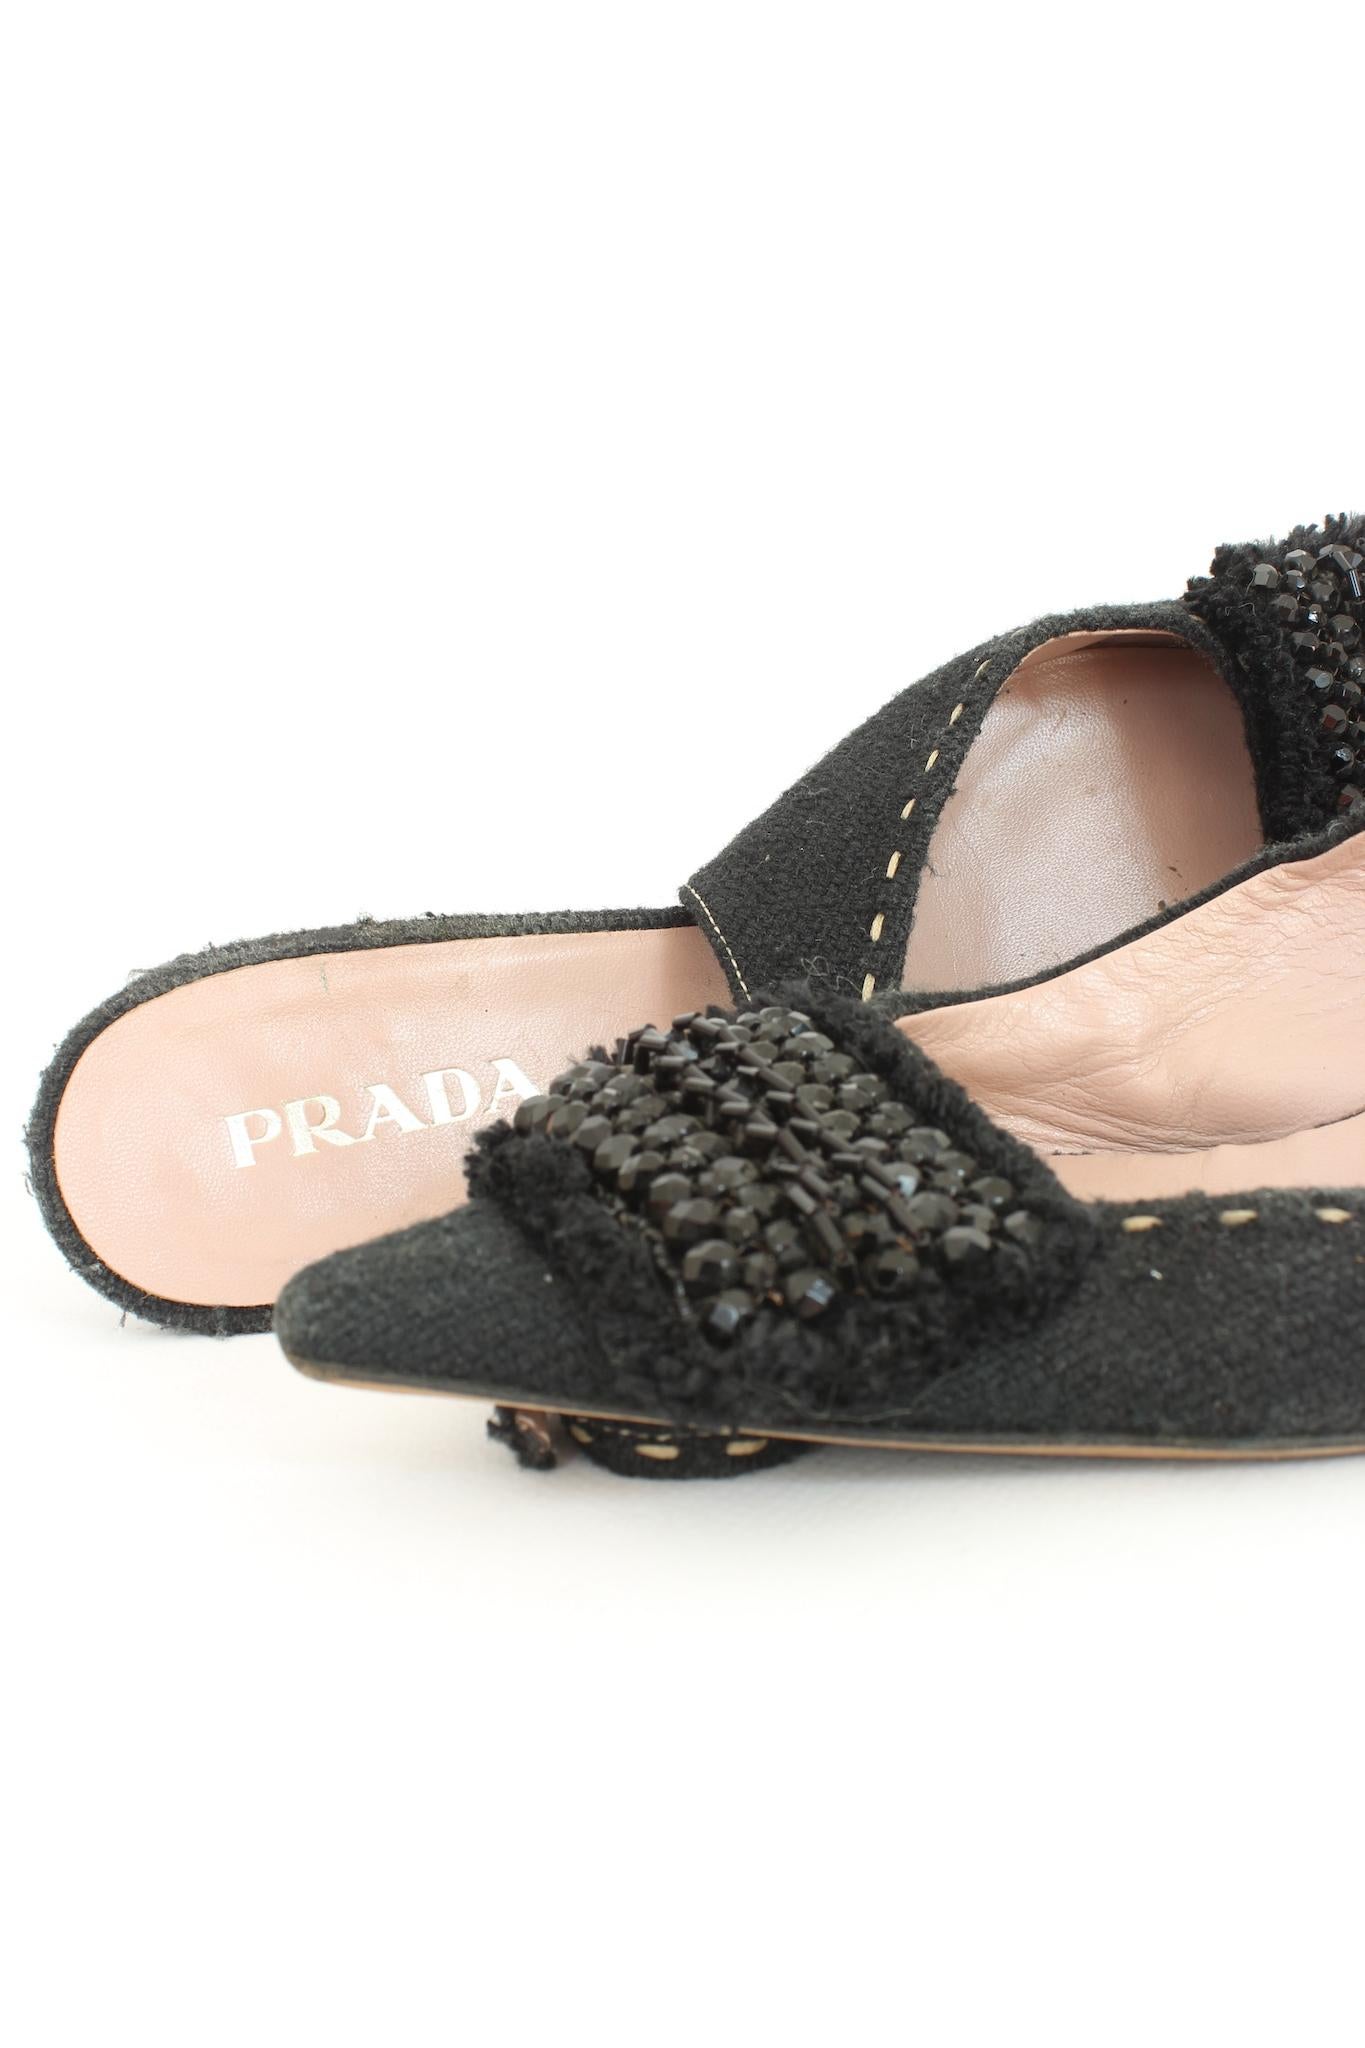 Prada Black Sequins Vintage Slingback Heel Pumps Shoes 2000s 1